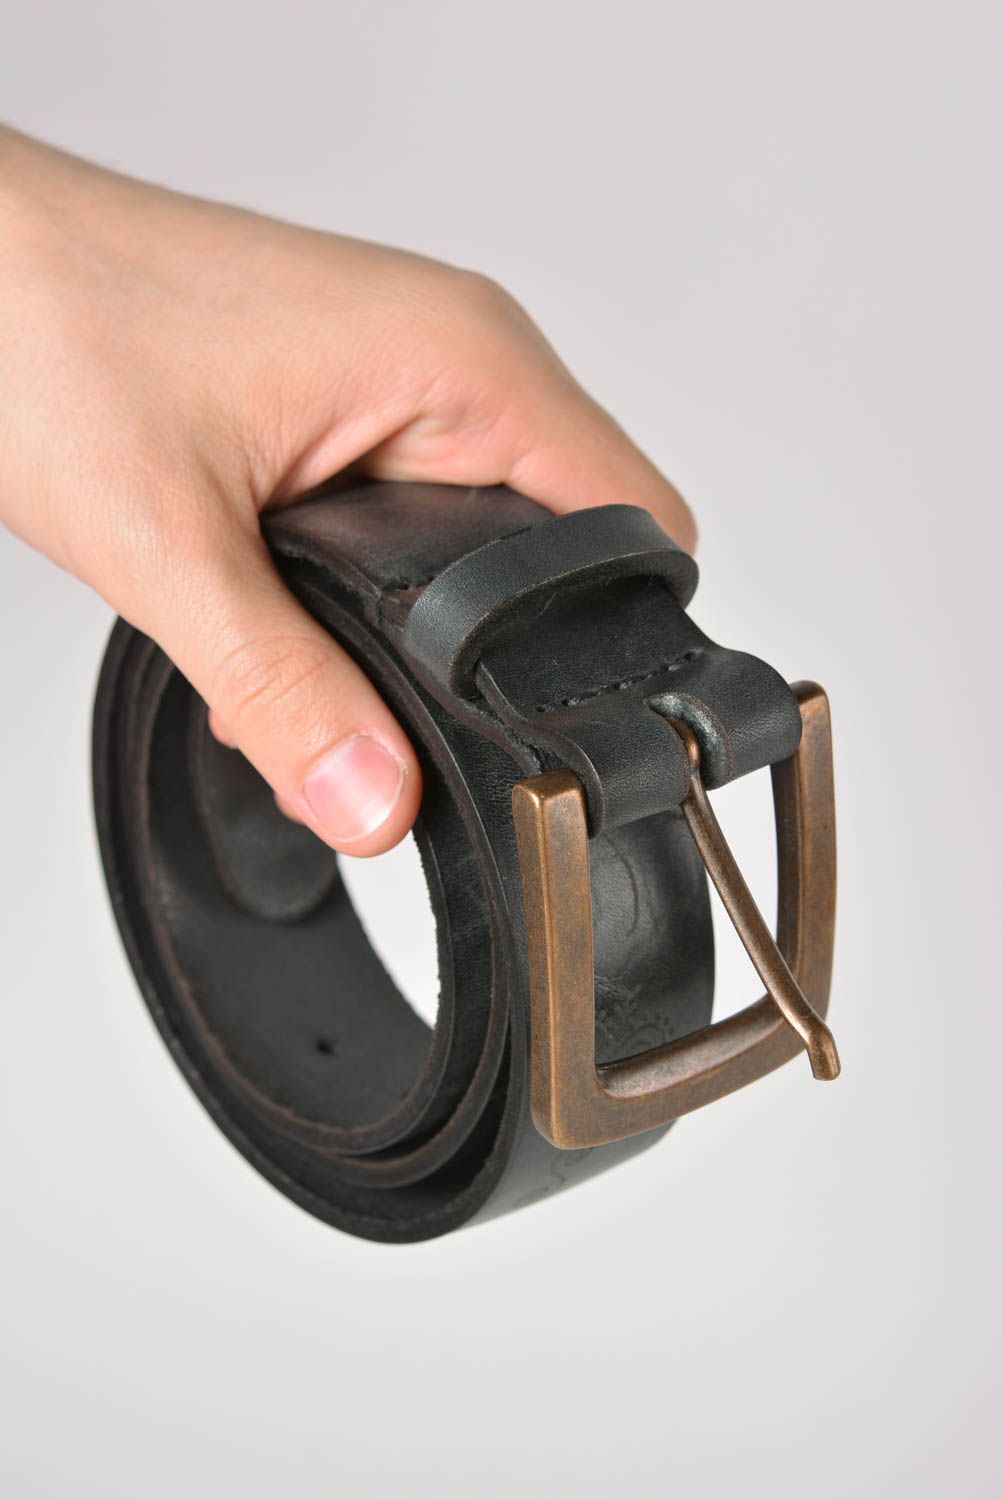 Cinturón de cuero hecho a mano ropa masculina poco común accesorio de moda foto 4